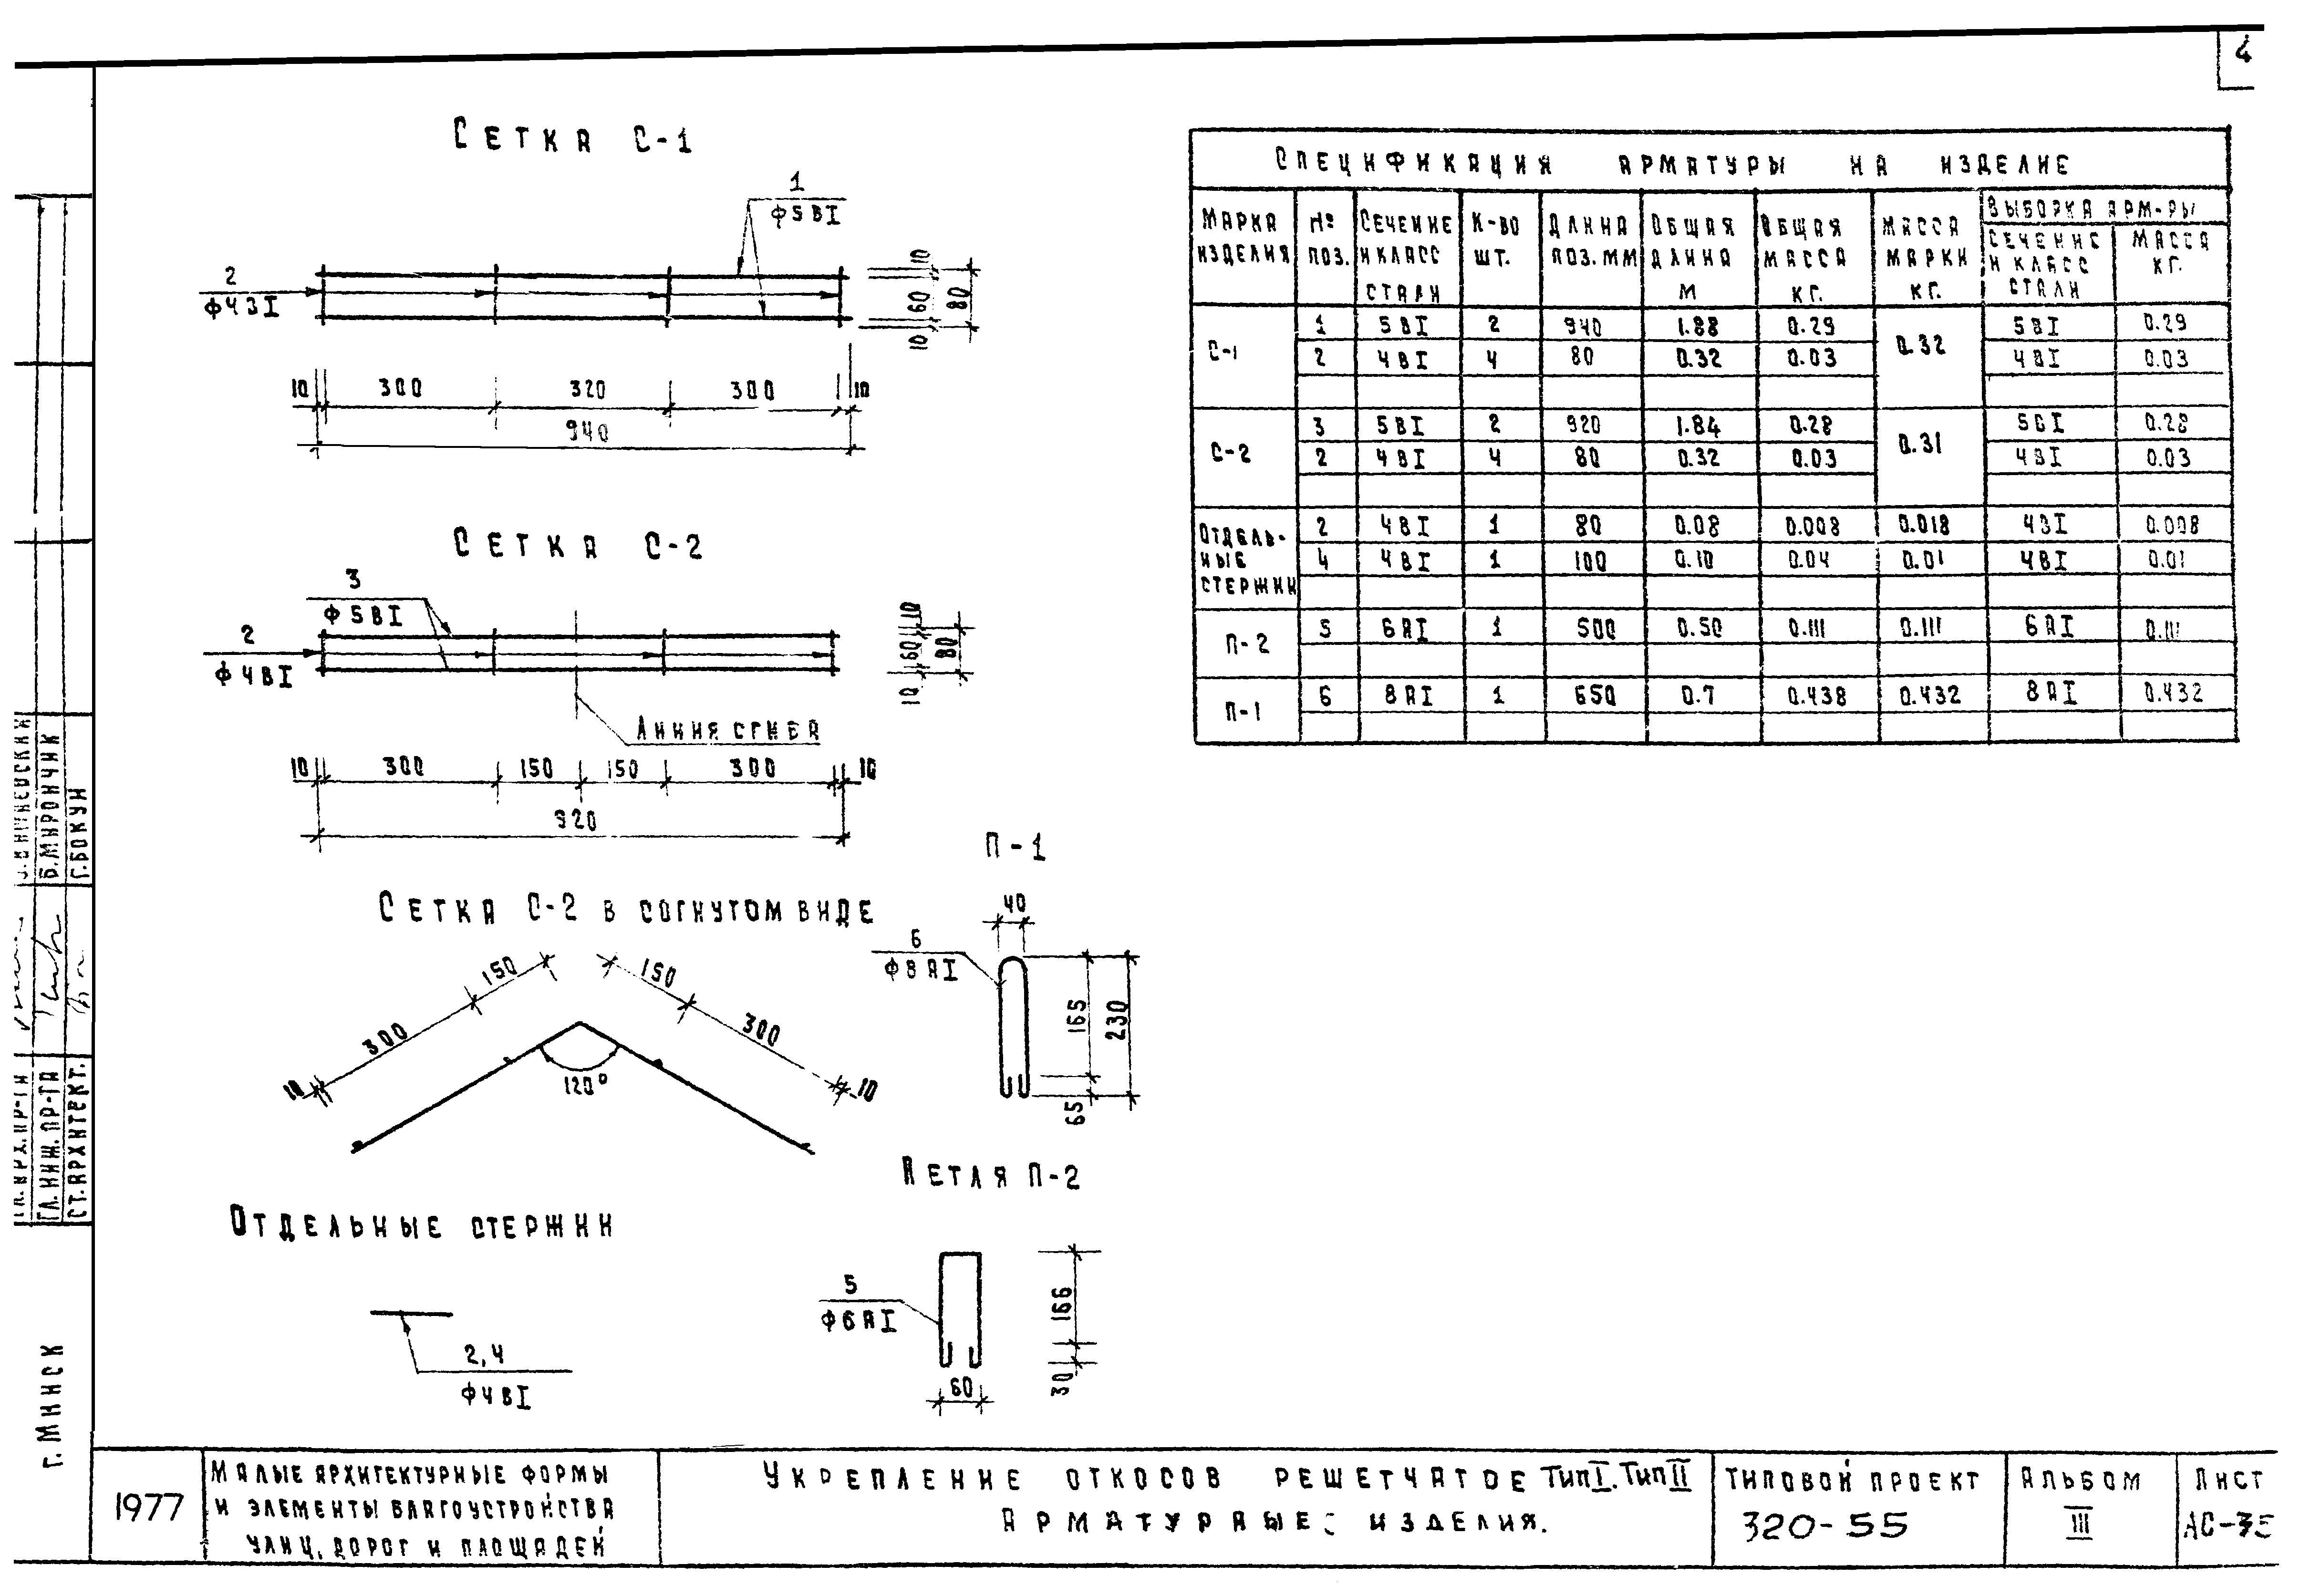 m1977 wiring diagram